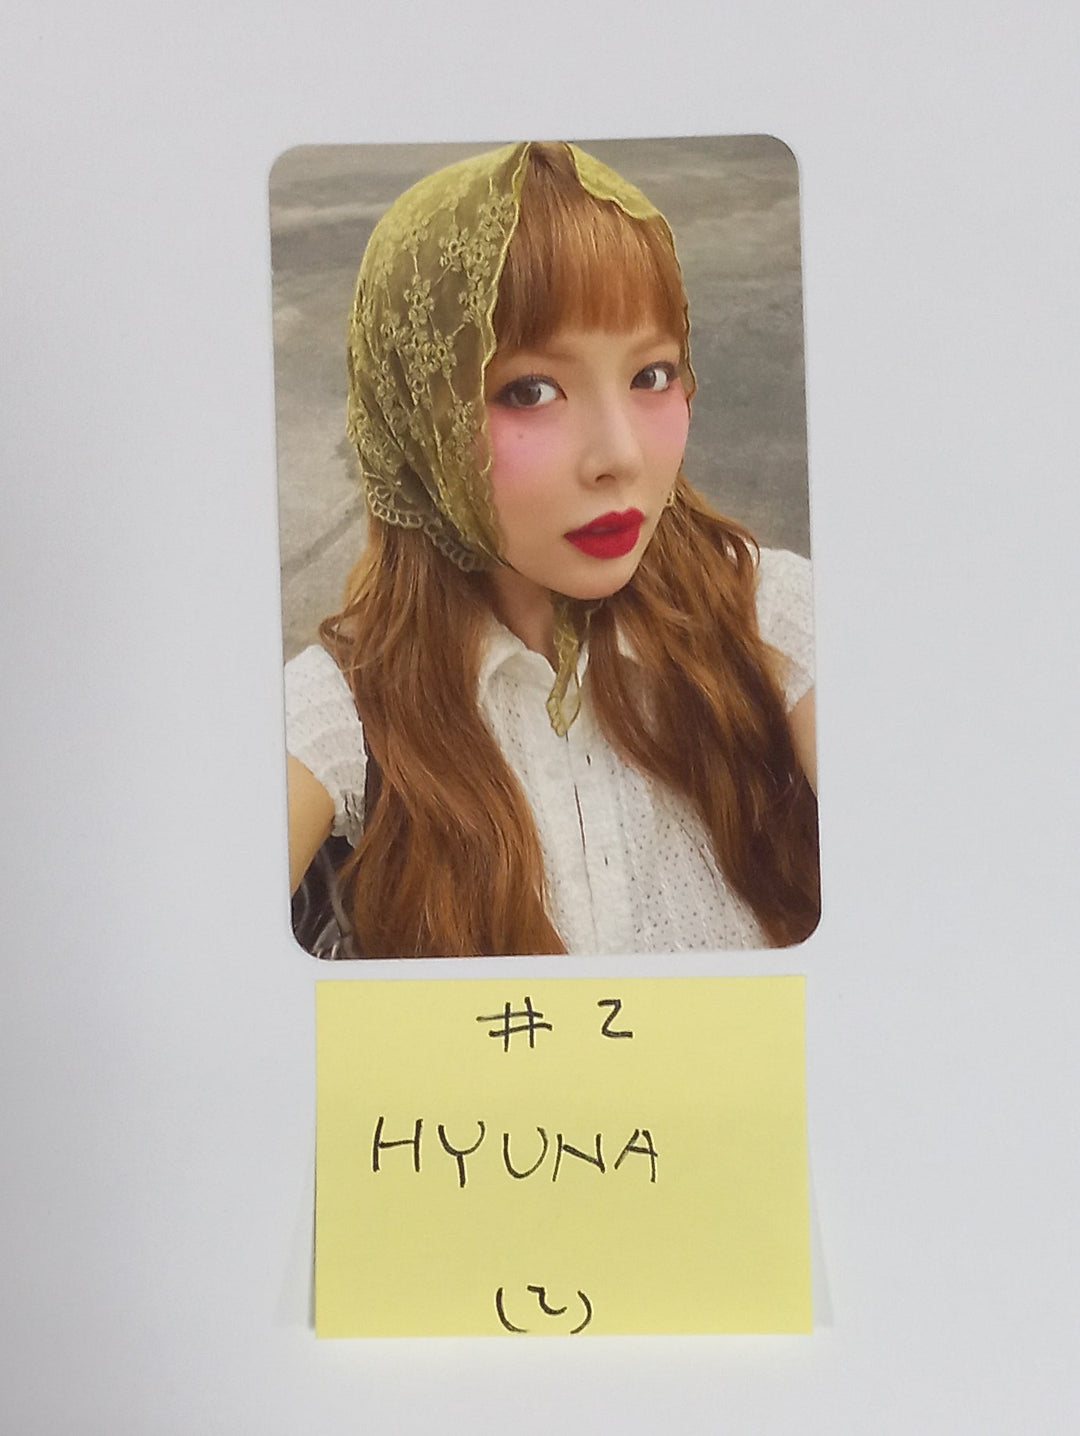 Hyuna "Attitude" - Official Photocard [24.5.9]